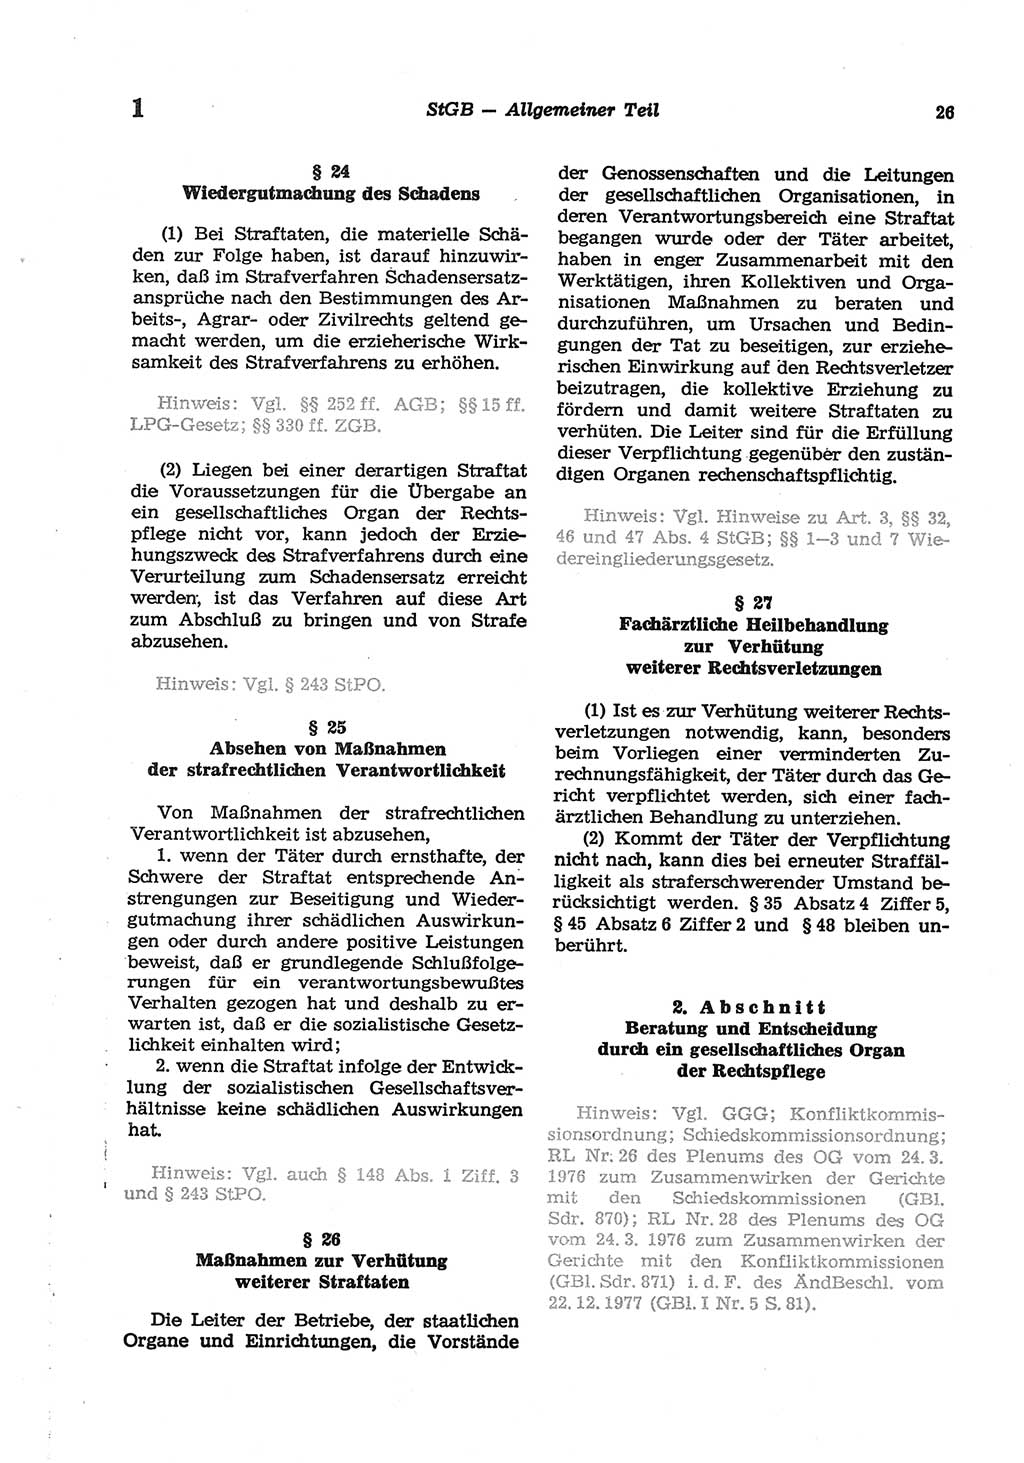 Strafgesetzbuch (StGB) der Deutschen Demokratischen Republik (DDR) und angrenzende Gesetze und Bestimmungen 1977, Seite 26 (StGB DDR Ges. Best. 1977, S. 26)